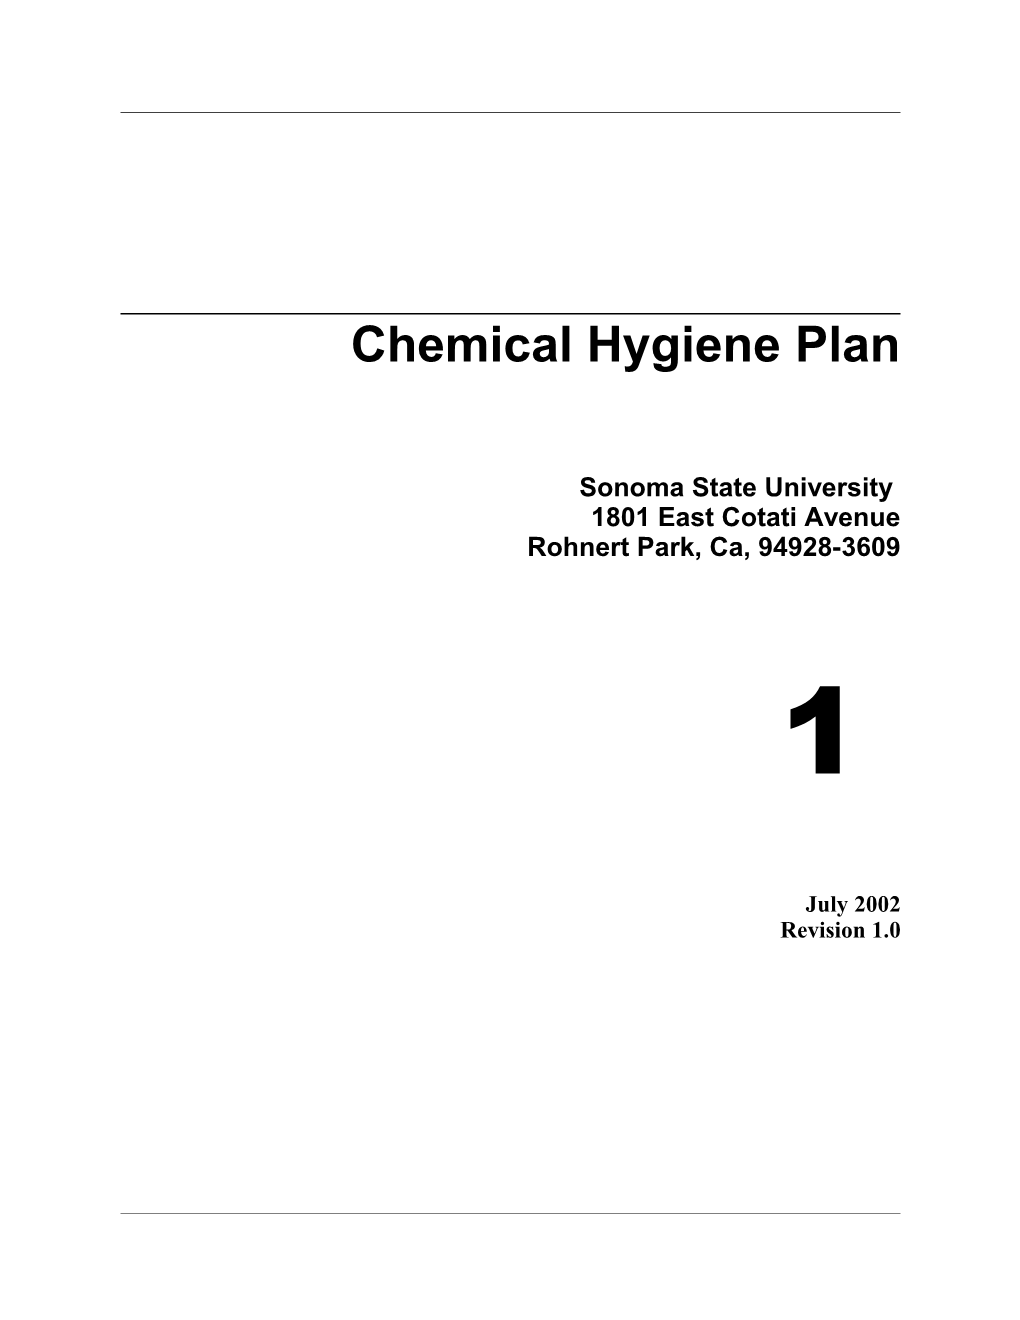 SSU's Chemical Hygiene Plan